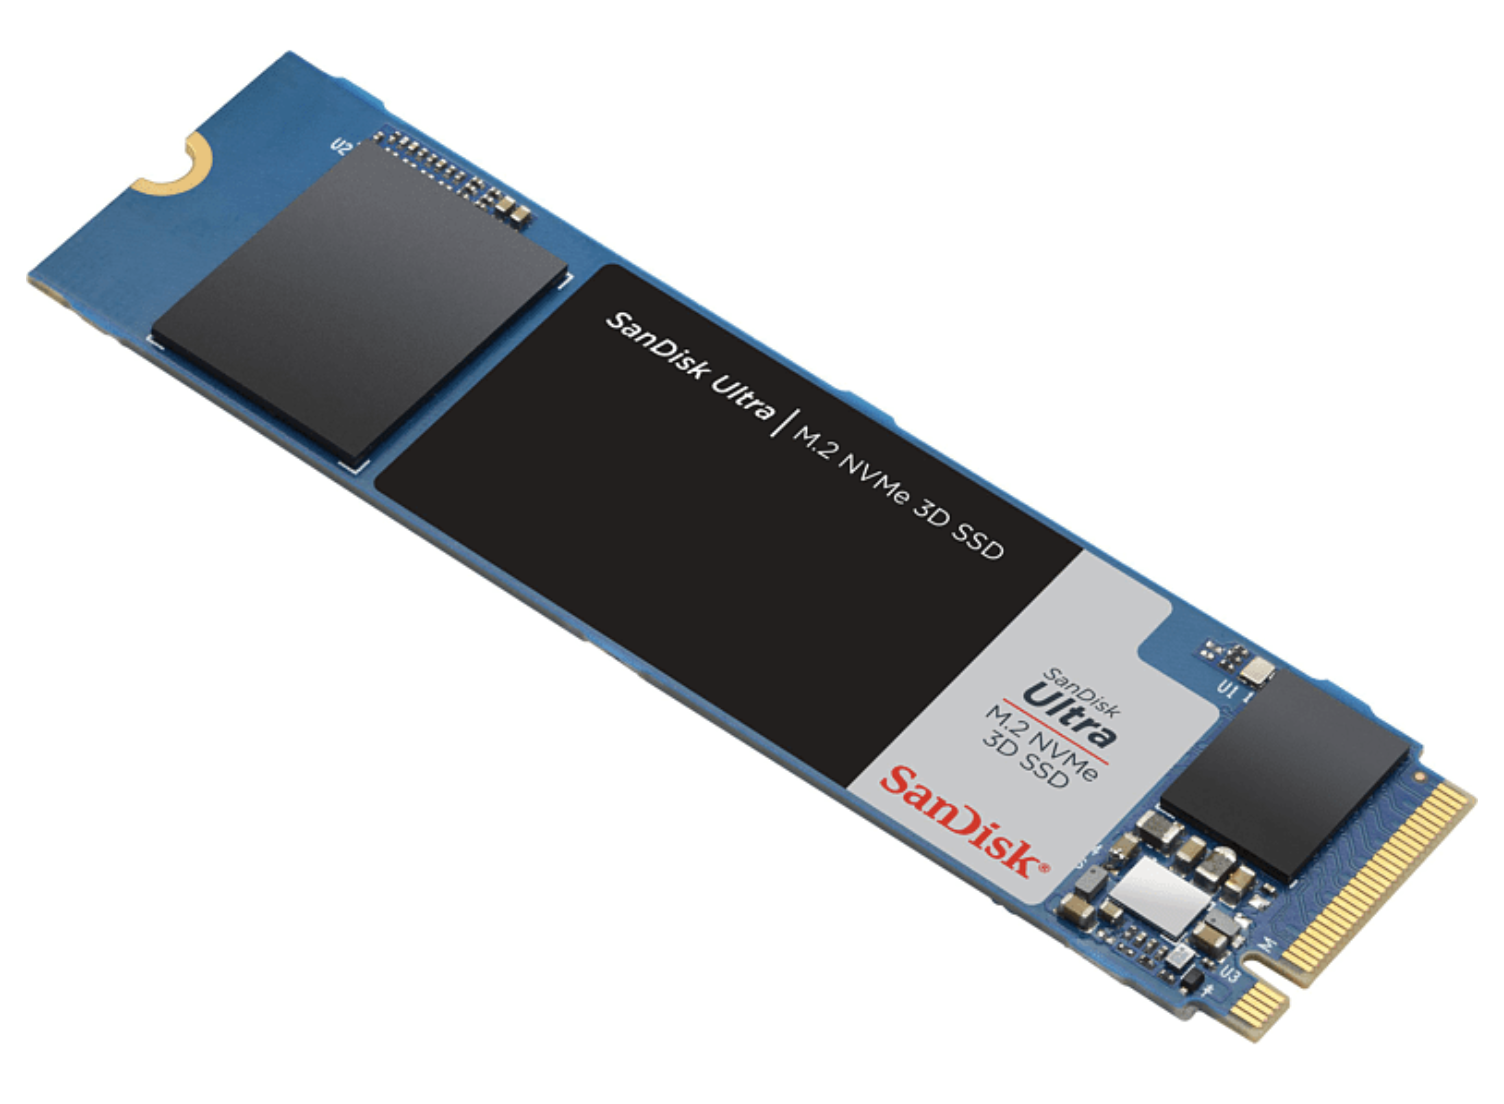 SANDISK Ultra 3D 500 GB Interne M.2 SSD für nur 39€ inkl. Versand (statt 59€)